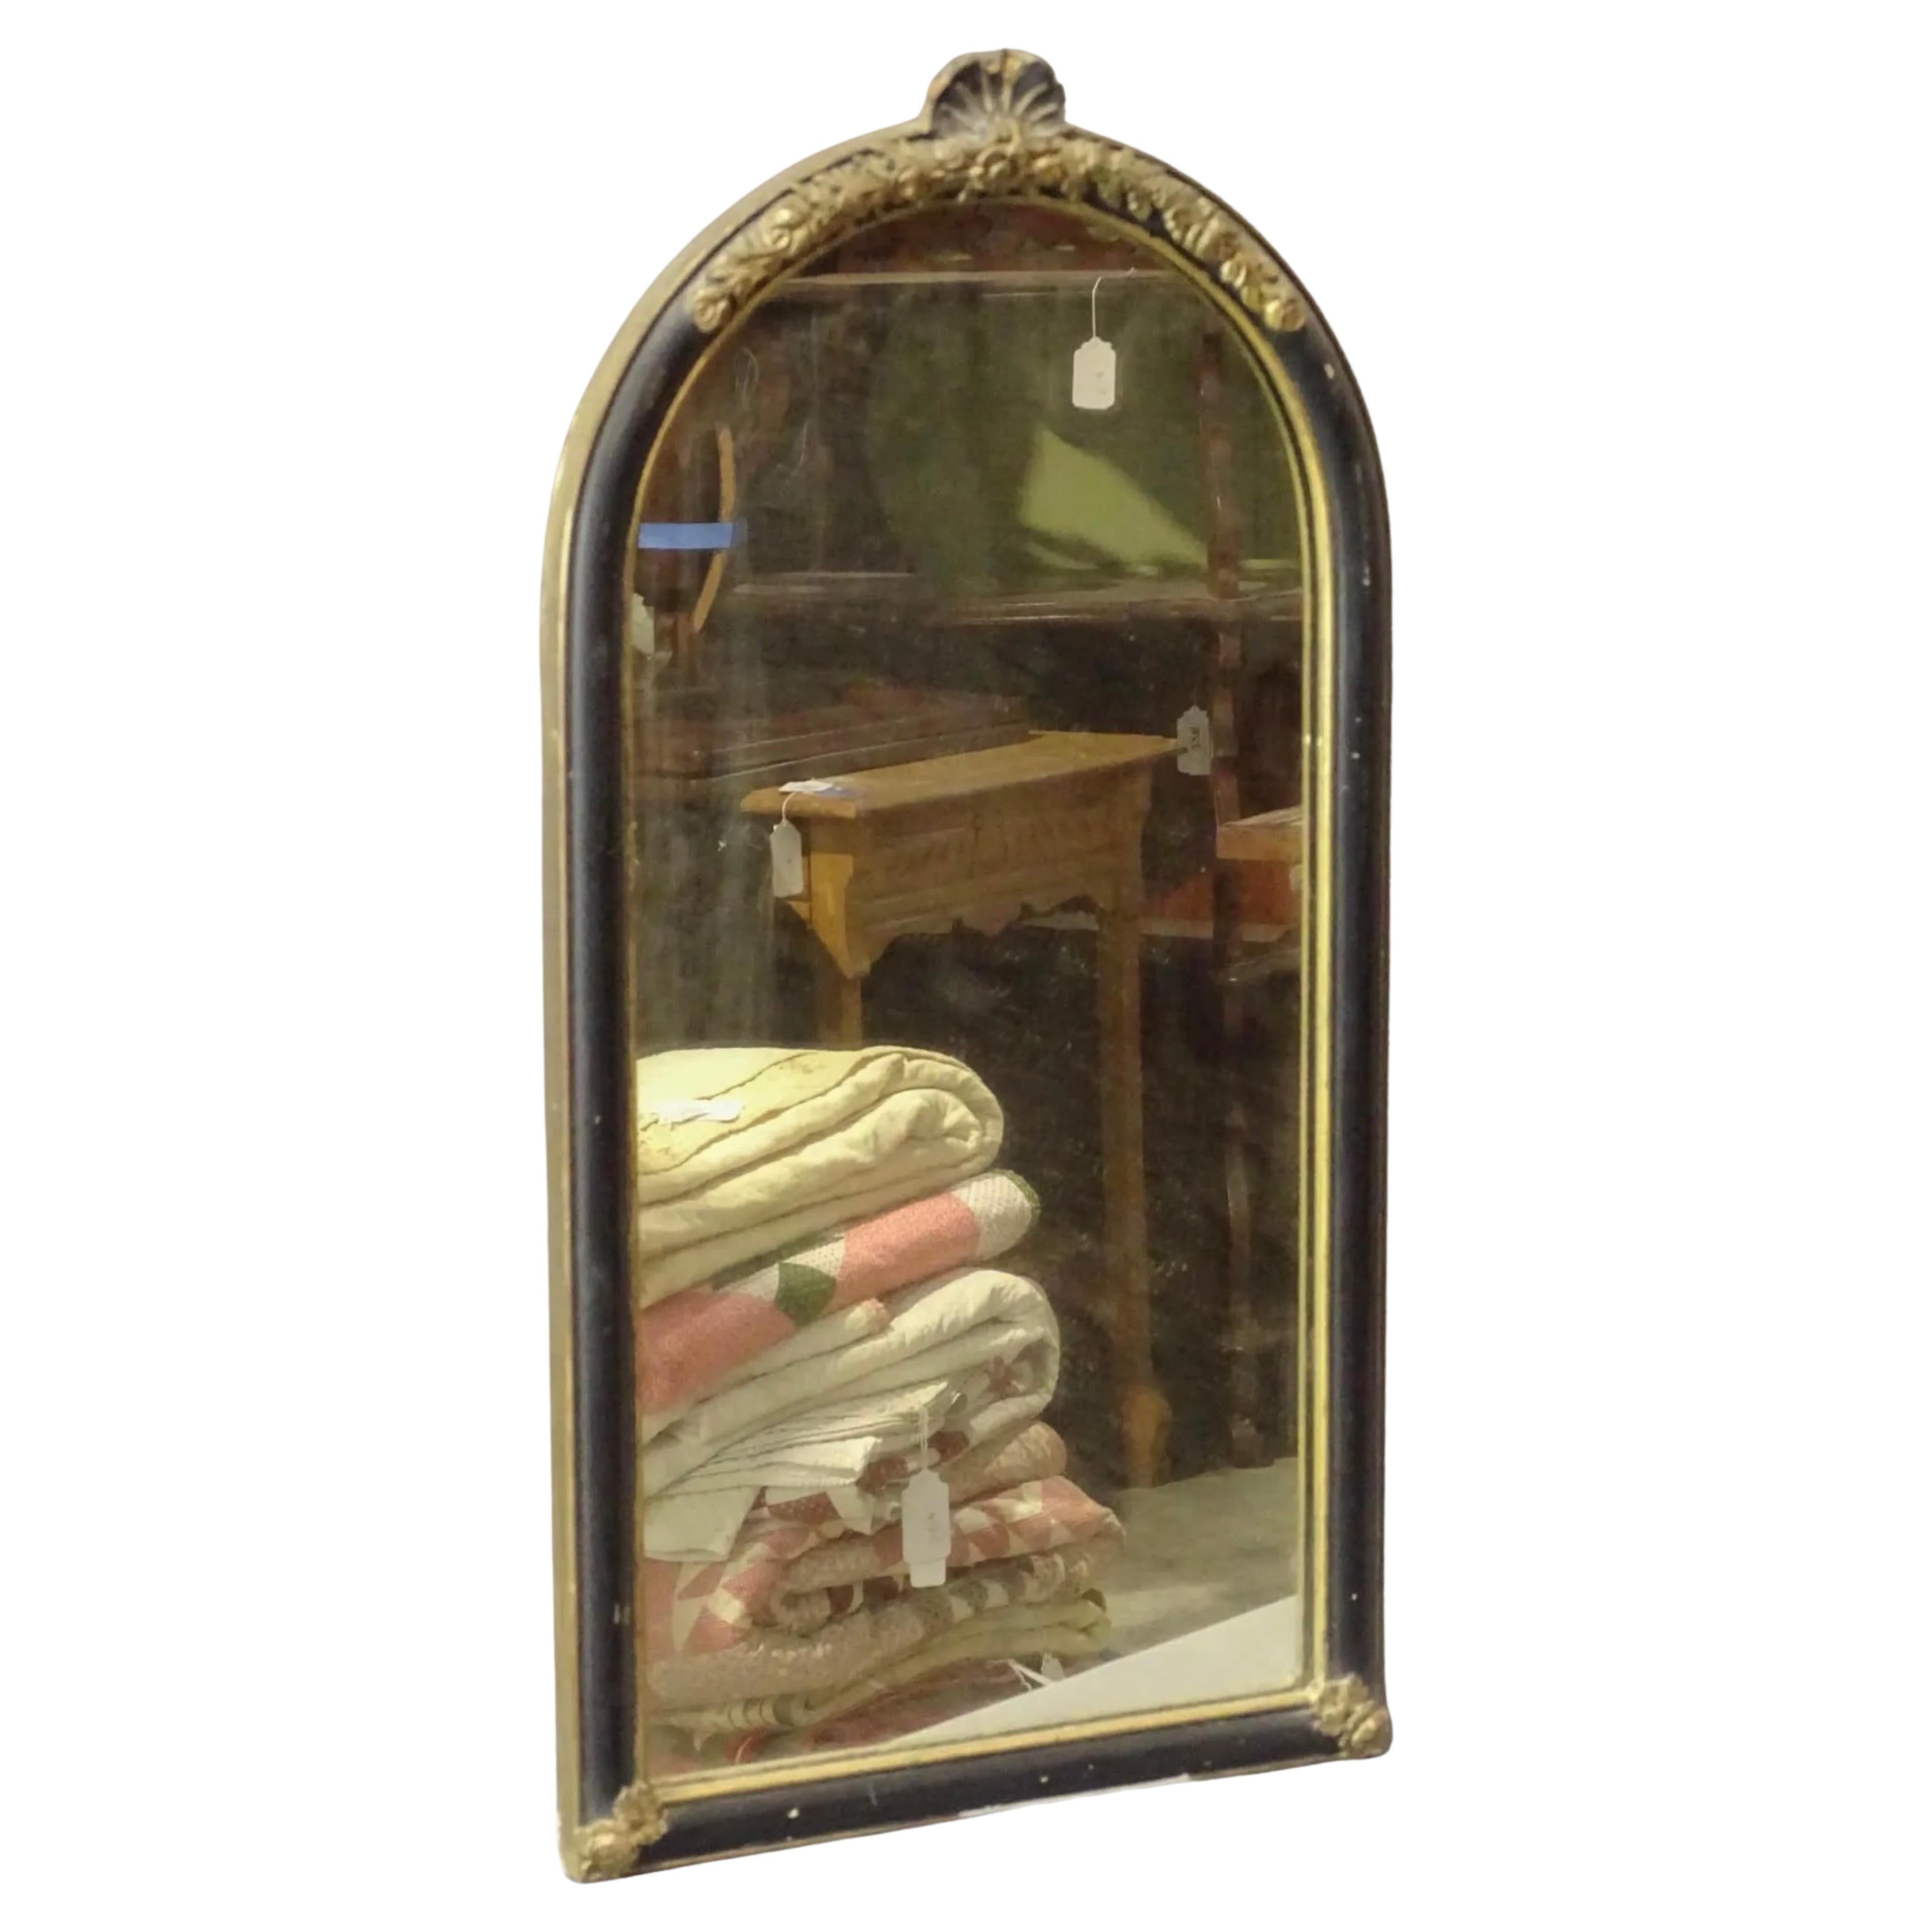 Ein kleiner kontinentaler Spiegel im Queen Anne-Stil mit ebonisiertem Rahmen, vergoldetem Muscheldekor auf der ovalen Oberseite und goldenen Verzierungen, die den Rahmen umgeben.
Dieser kleinere Spiegel eignet sich als Puderzuckerspiegel,